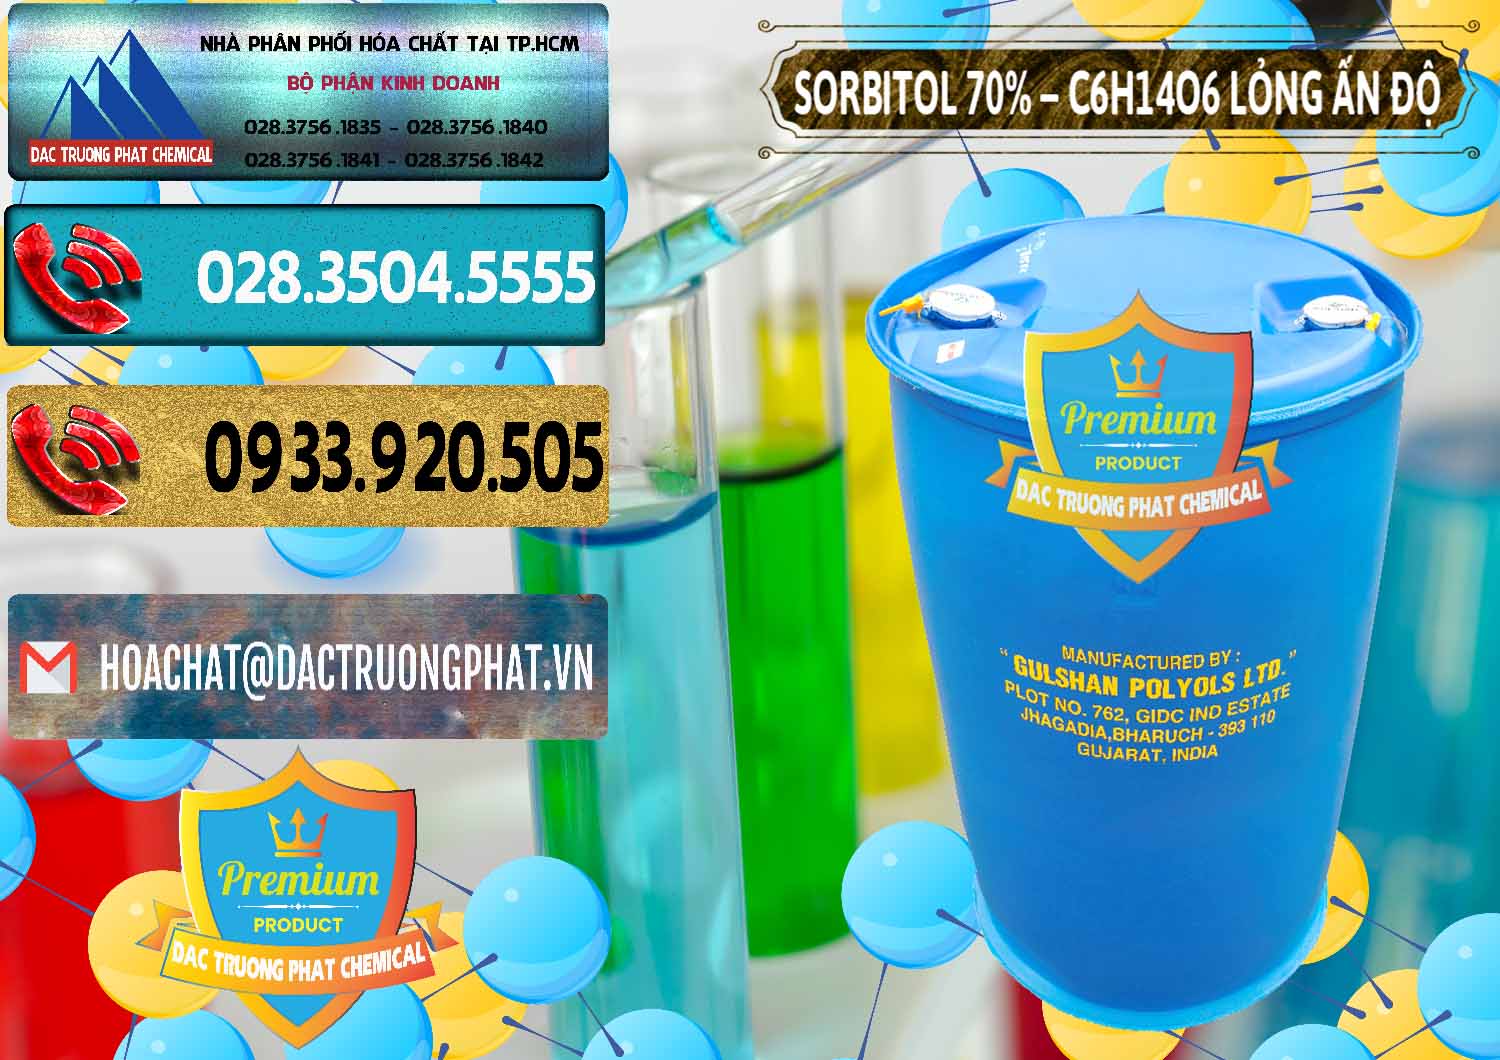 Đơn vị nhập khẩu ( bán ) Sorbitol - C6H14O6 Lỏng 70% Food Grade Ấn Độ India - 0152 - Công ty chuyên kinh doanh _ cung cấp hóa chất tại TP.HCM - hoachatdetnhuom.com